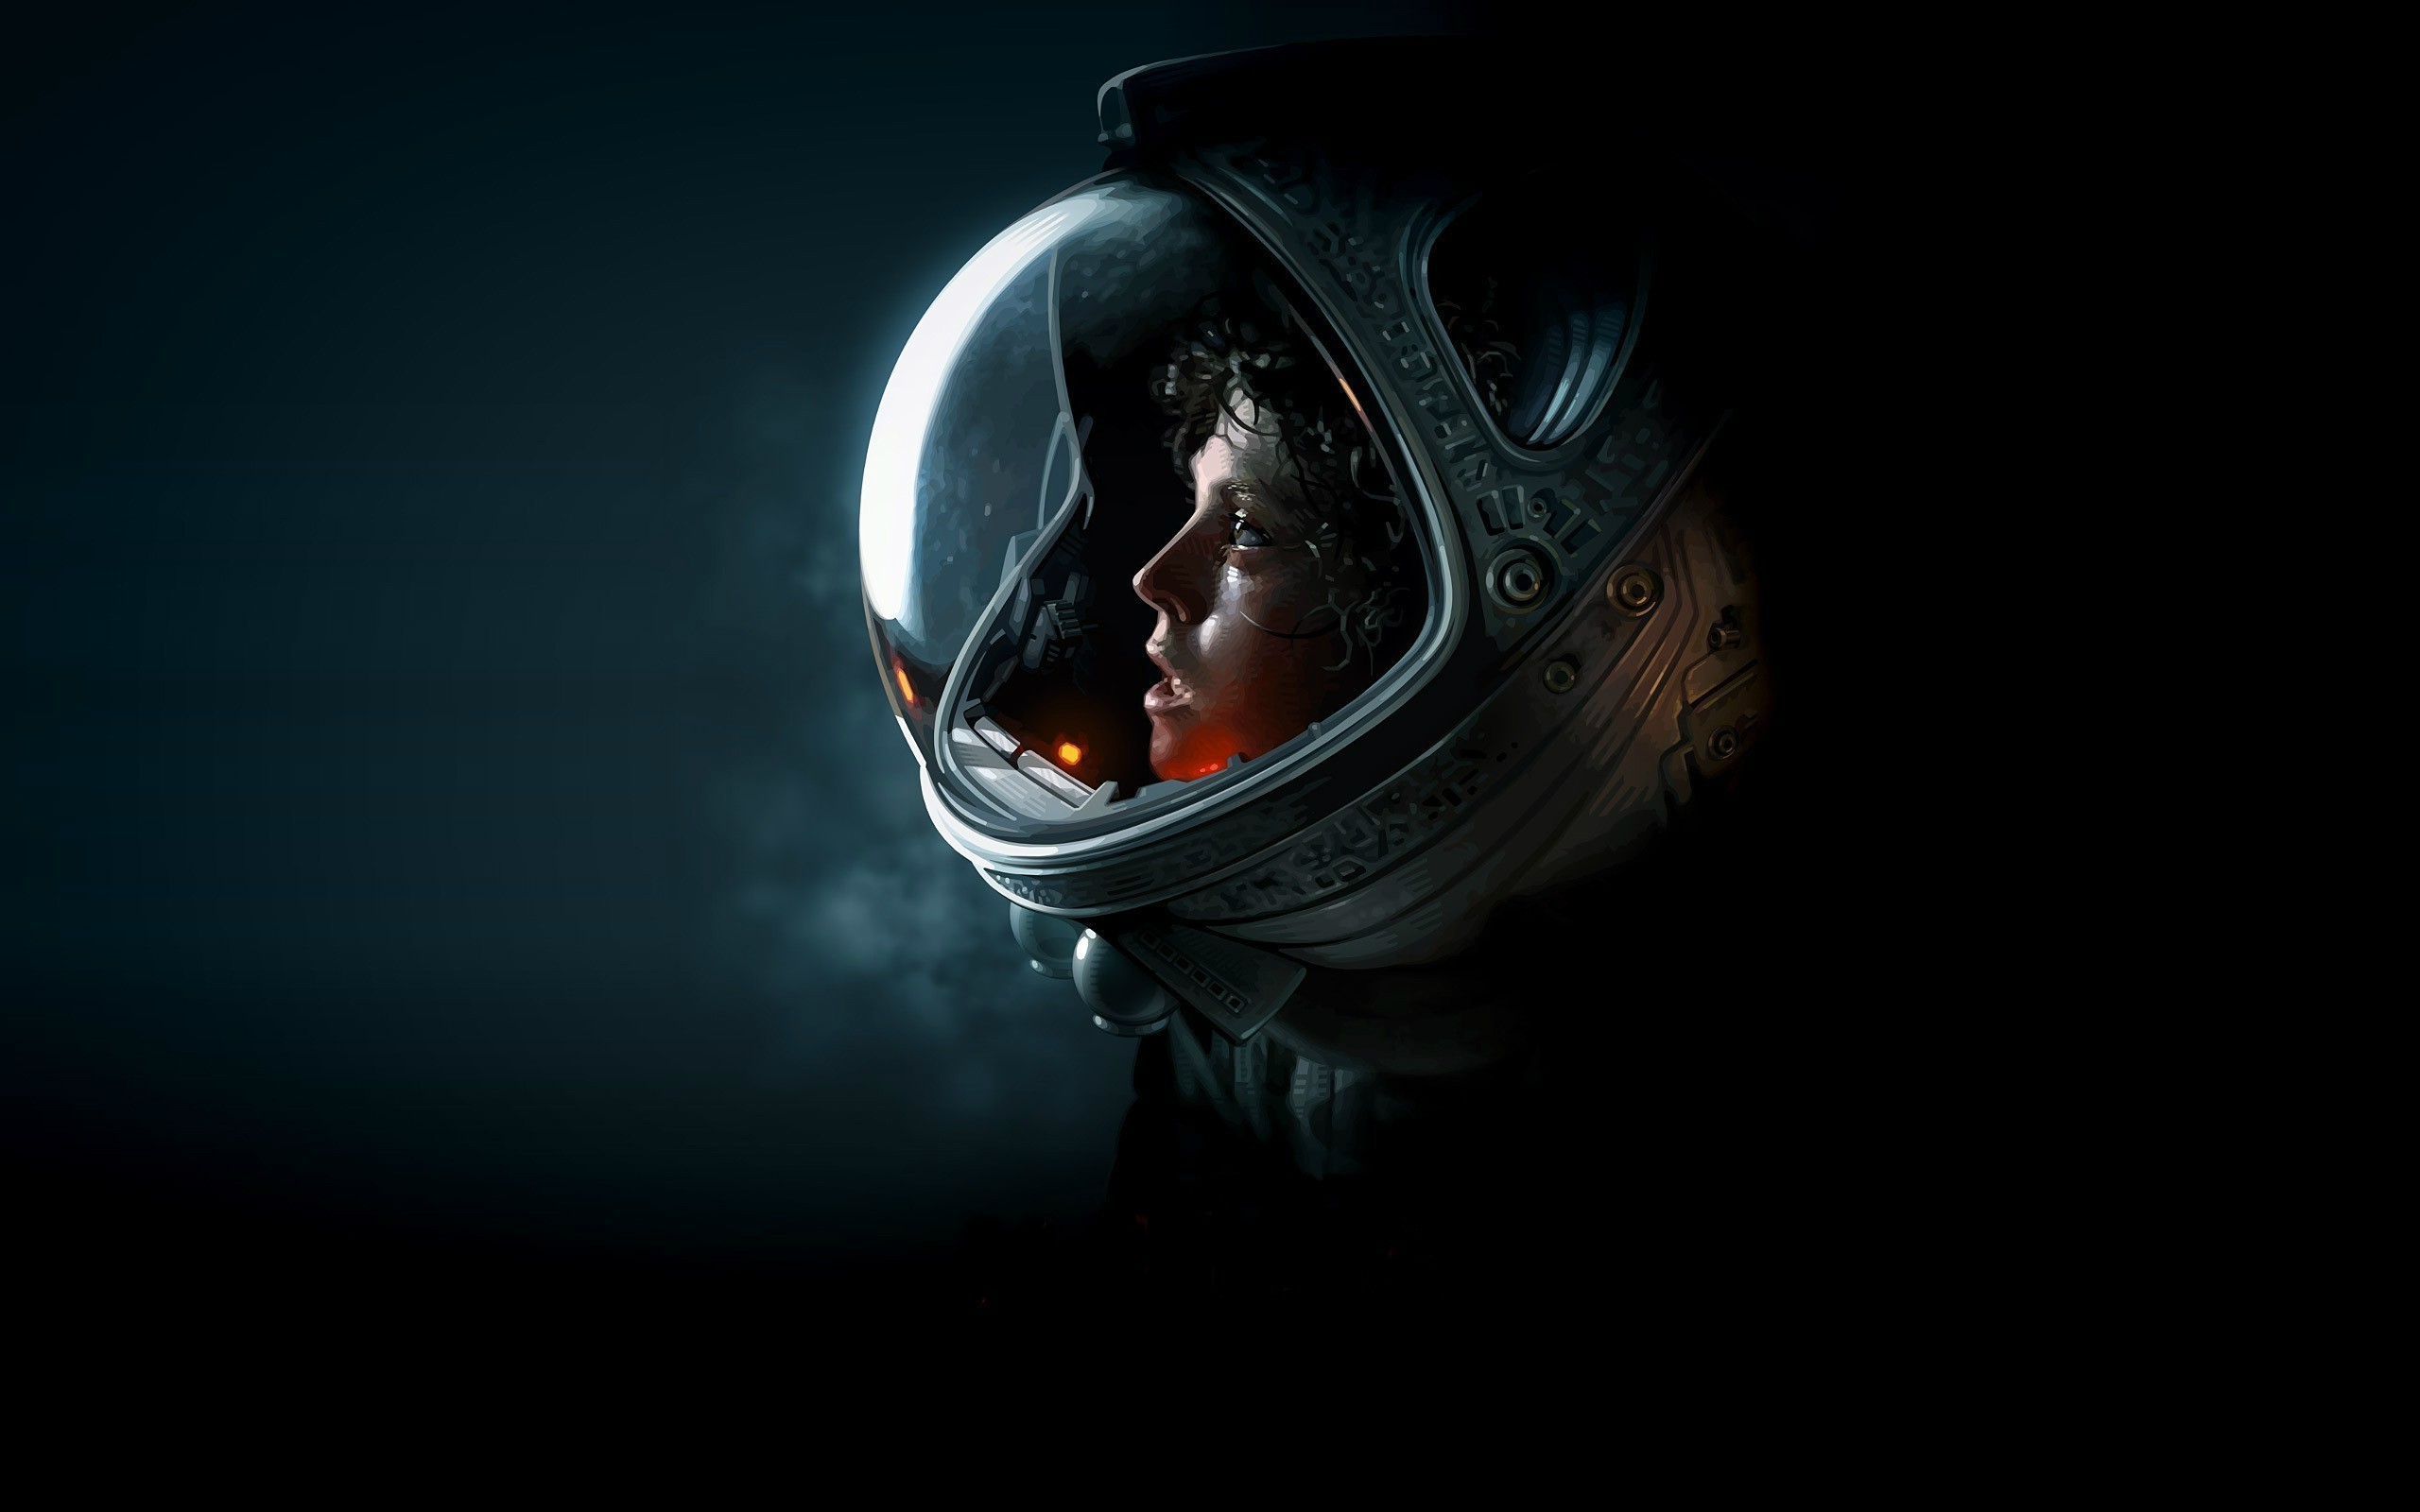 Alien Ripley Space Suit , HD Wallpaper & Backgrounds